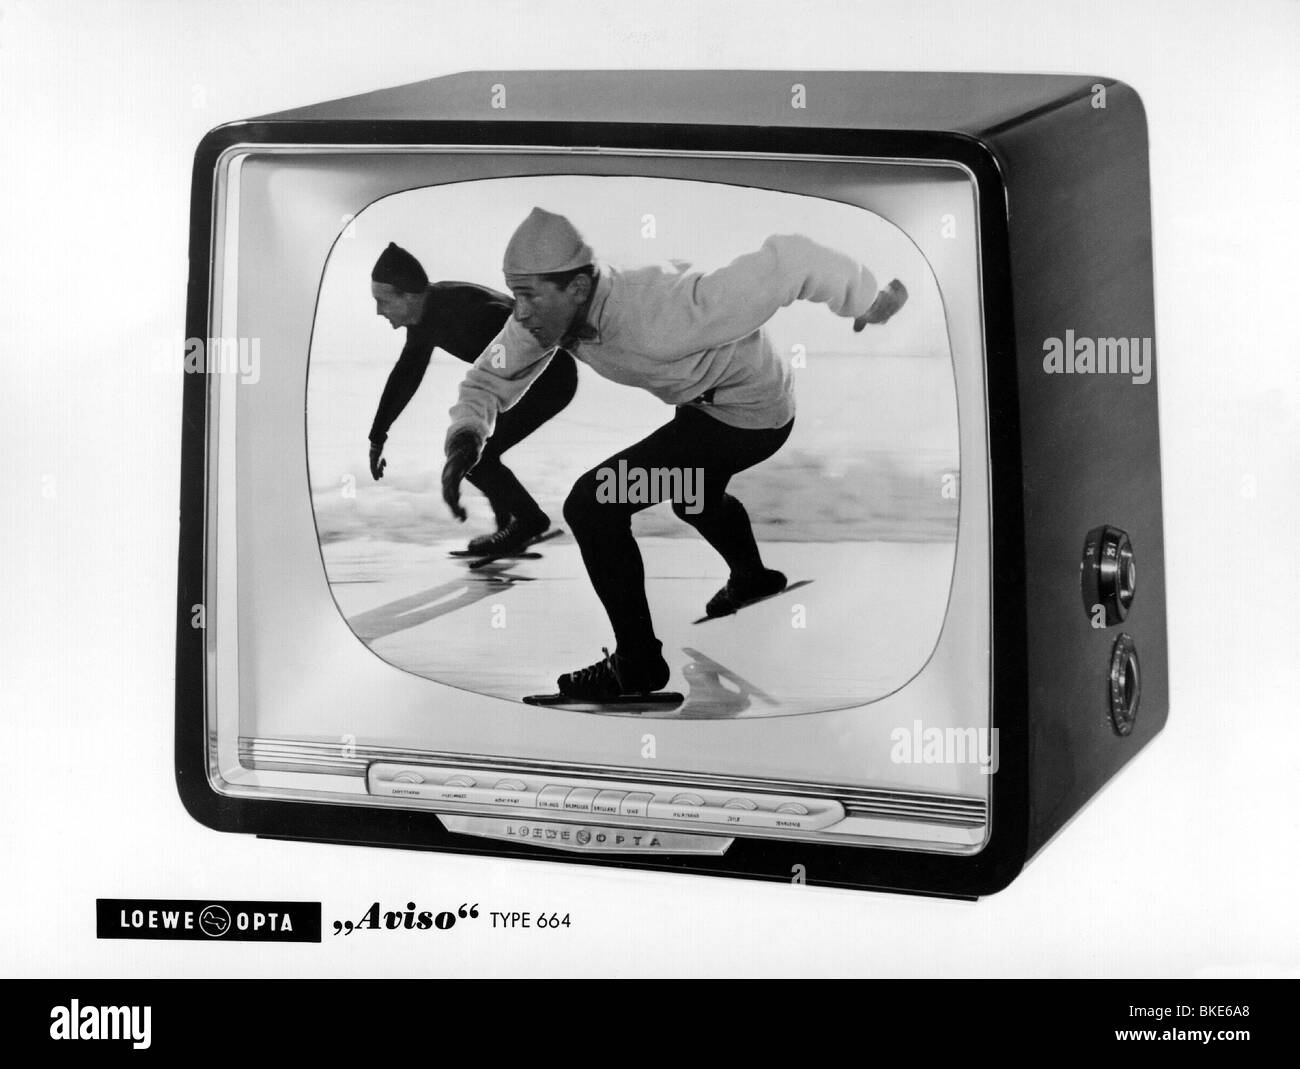 Televisione, Televisione, Televisione, Loewe Opta Avoso tipo 664, 1950s, , Foto Stock